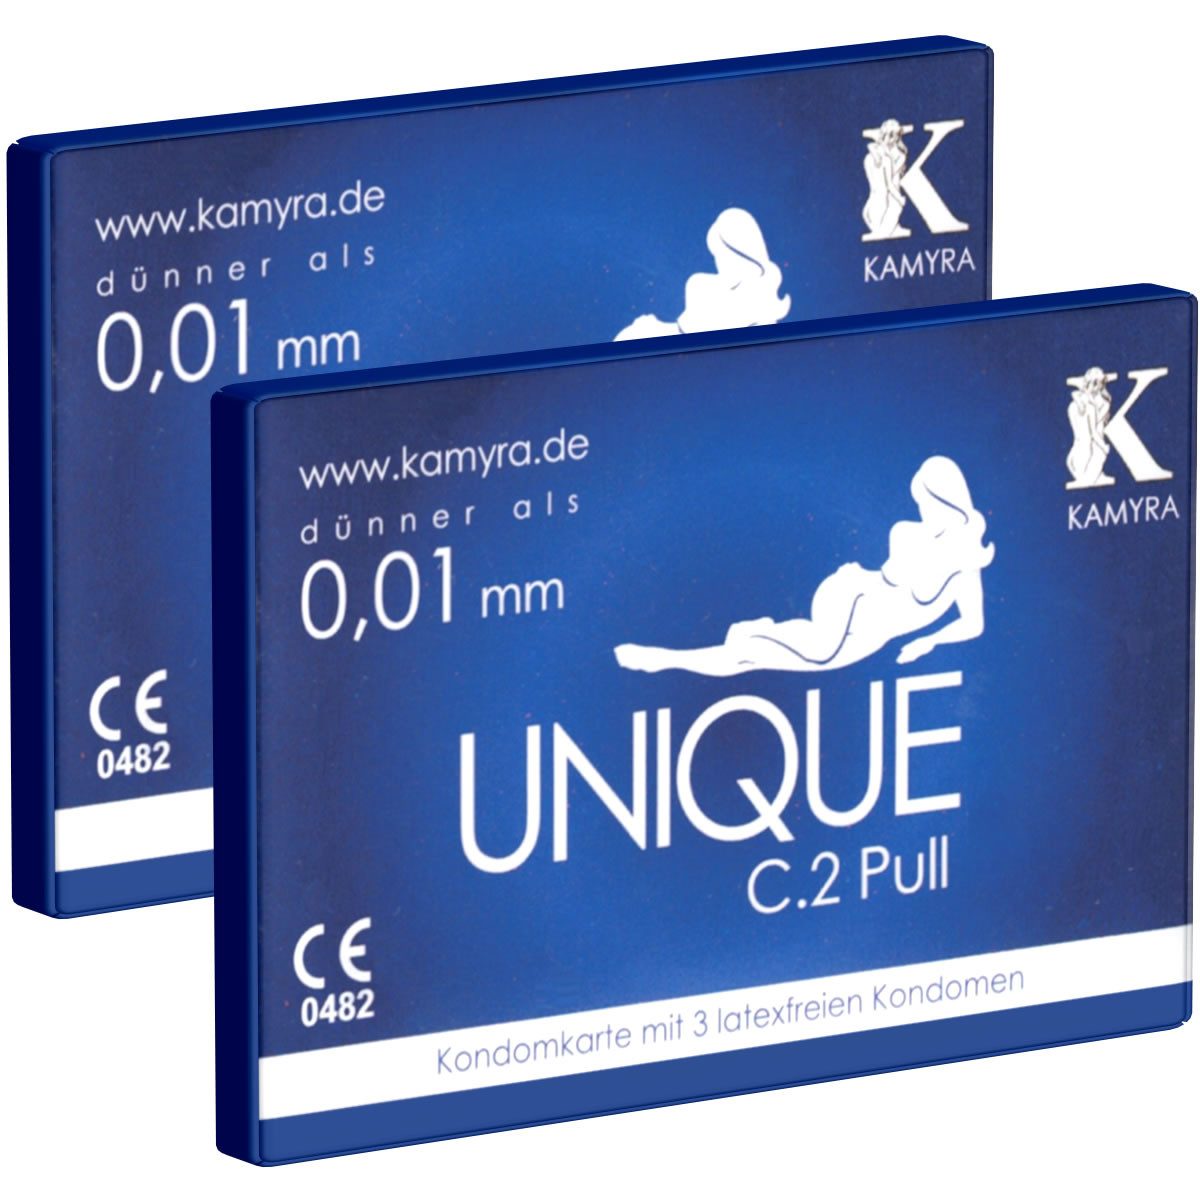 Kamyra Kondome Unique C.2 Pull - Kondomkarte - latexfreie Kondome Packung mit, 6 St., mit Abziehbändchen für schnelles Abrollen, auch mit ölhaltigen Gleitmitteln verwendbar